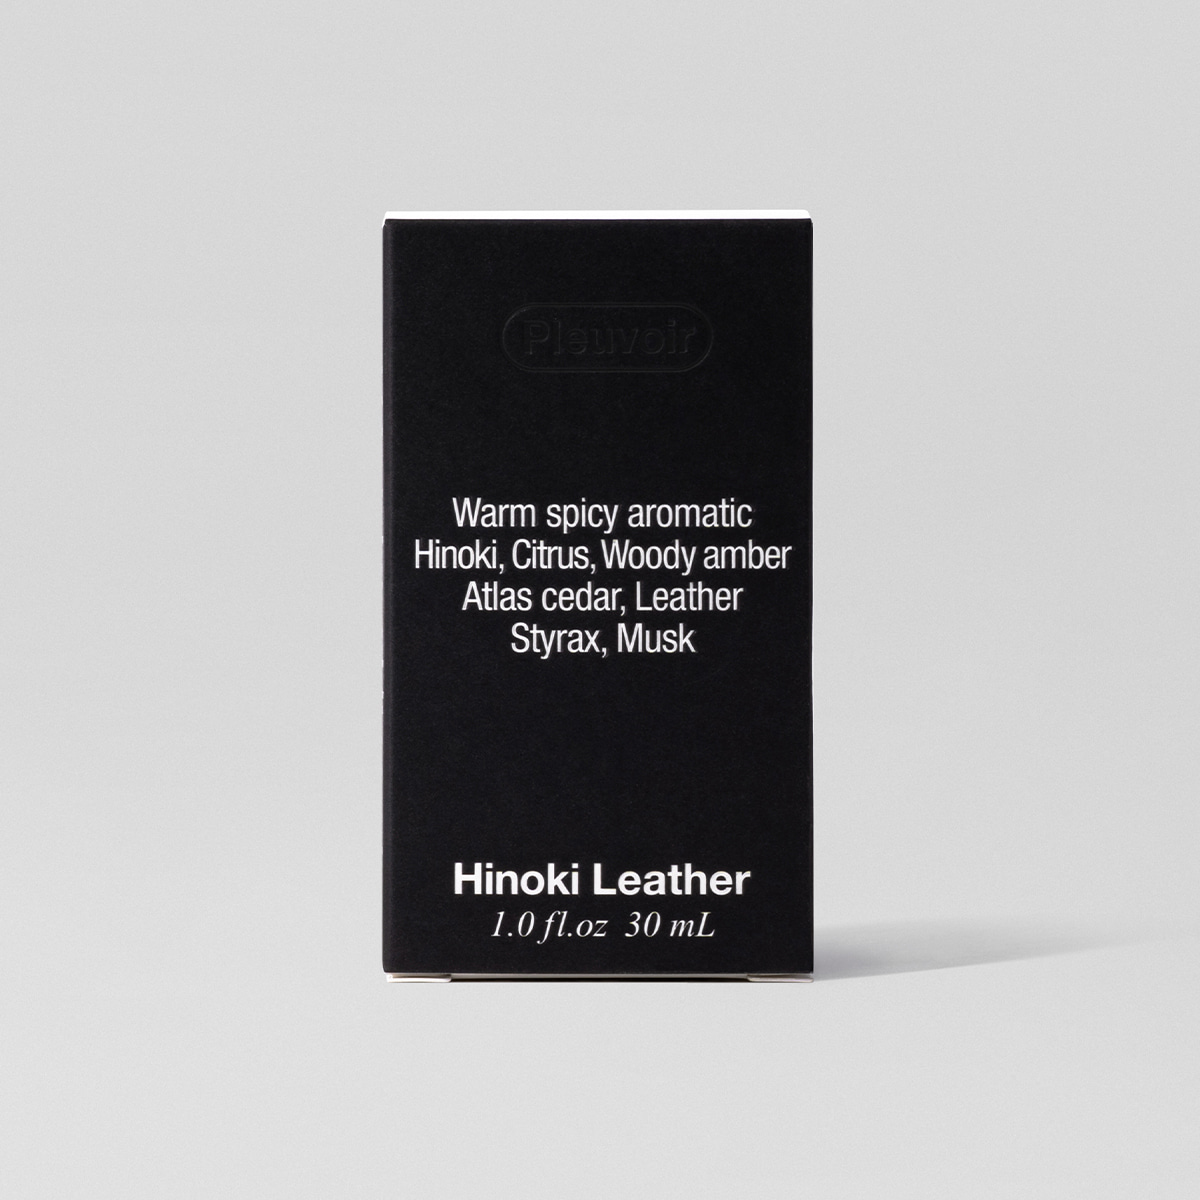 Hinoki Leather Hand Cream